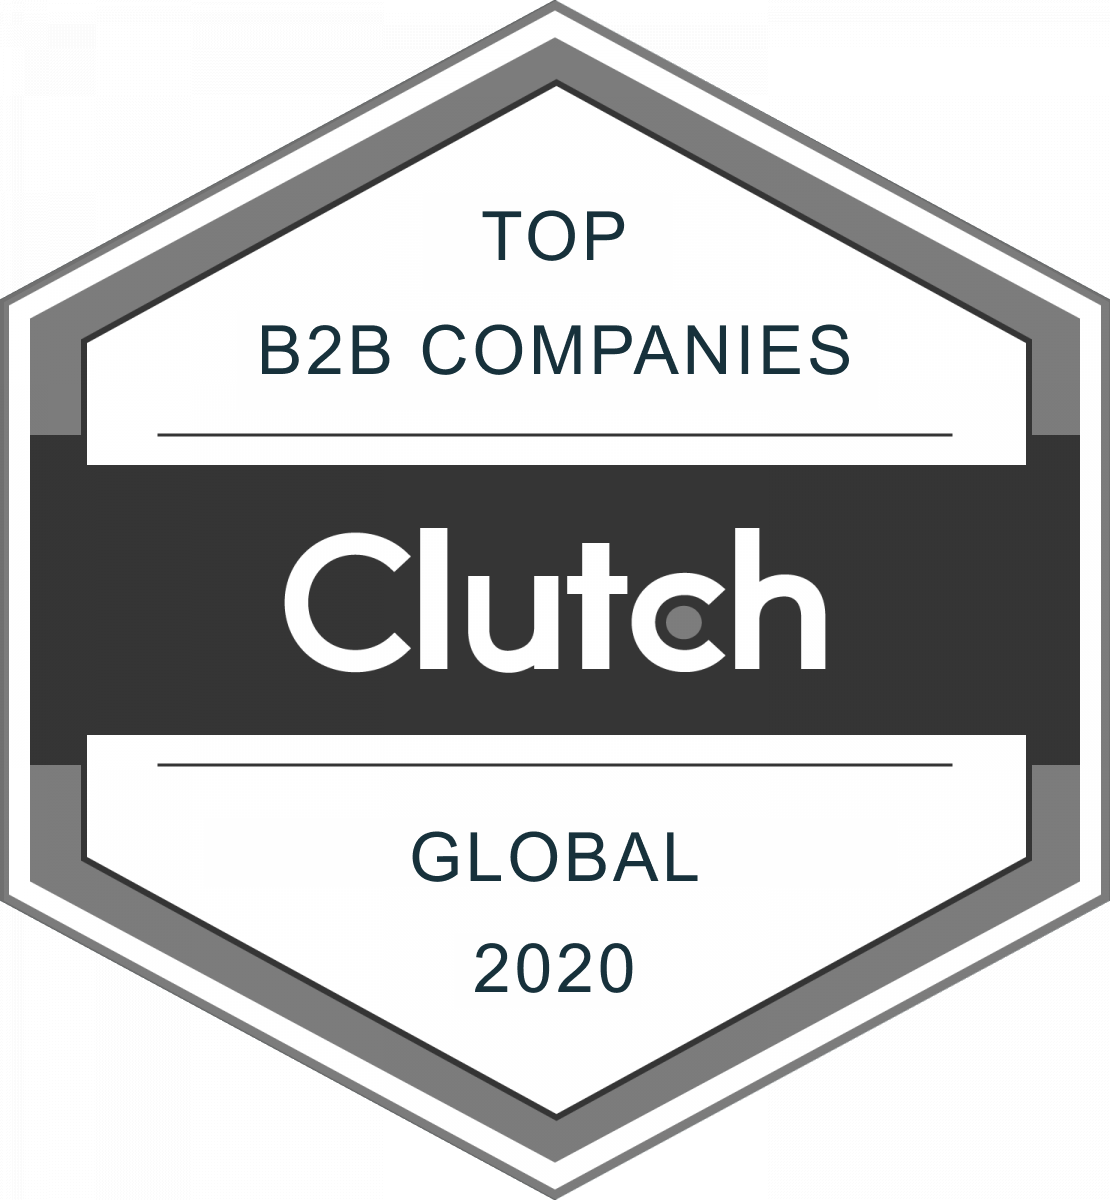 Top B2B Compnaies 2020 Clutch